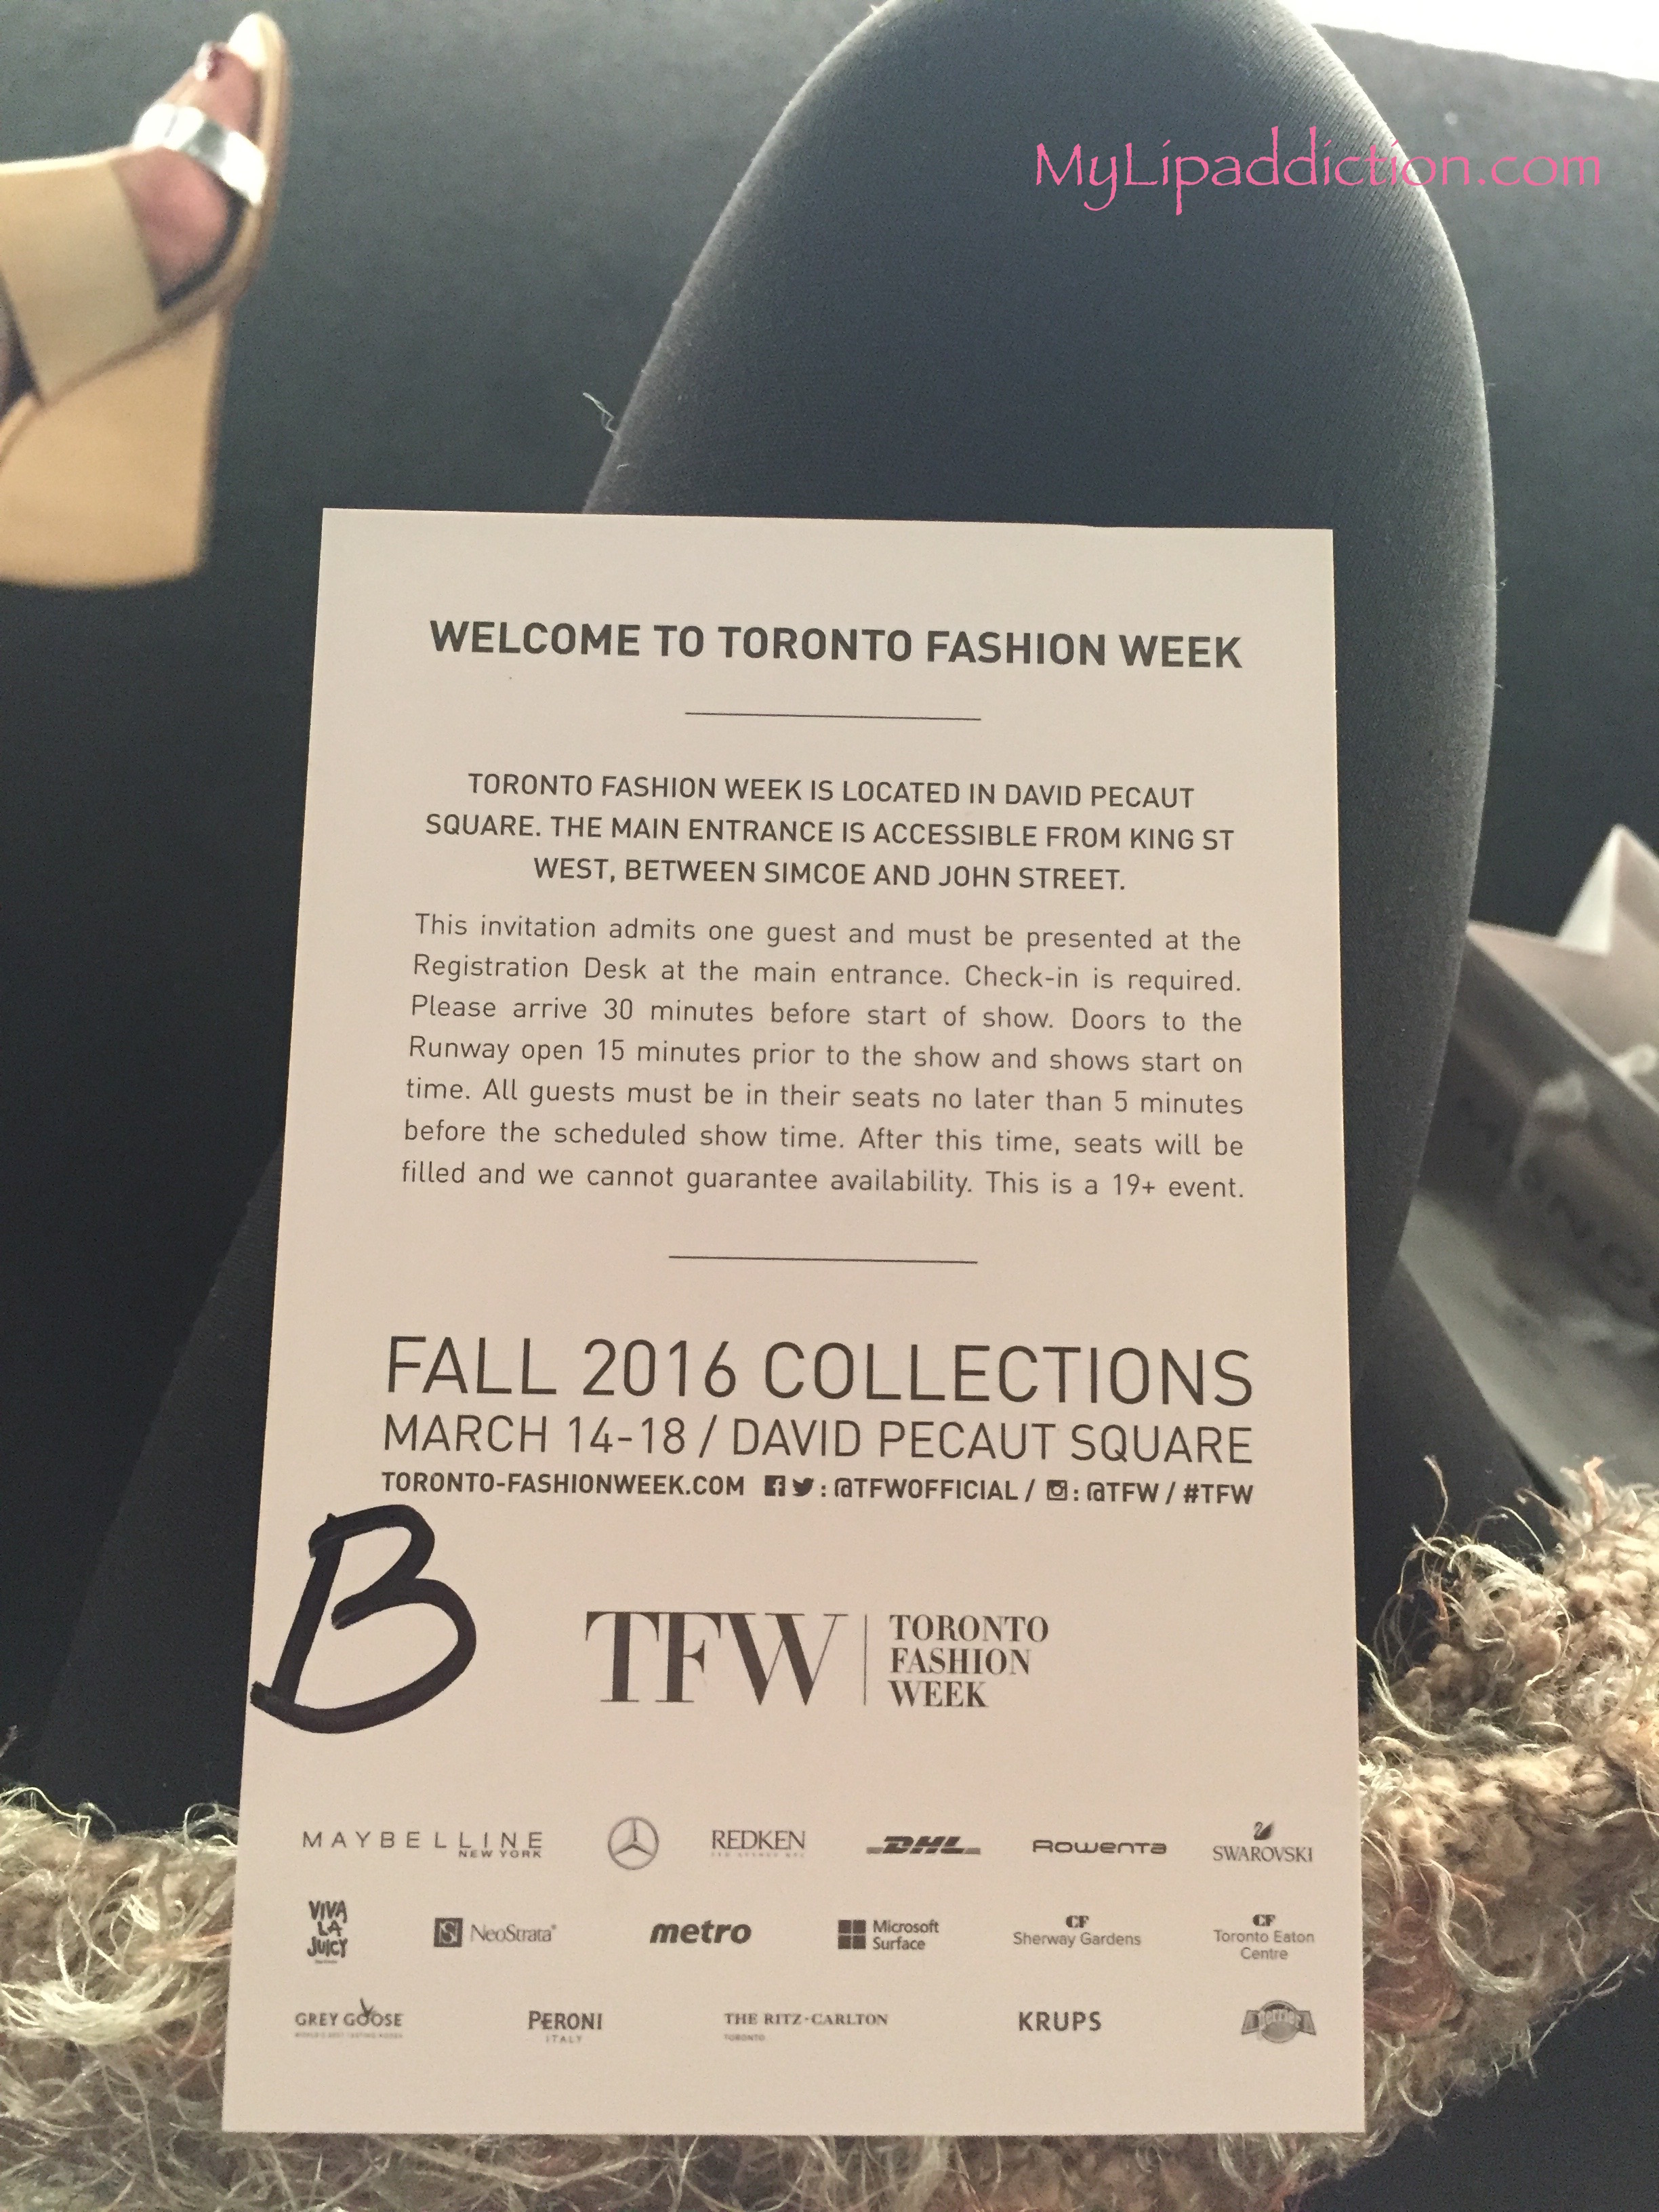 Toronto Fashion Week - MyLipAddiction.com